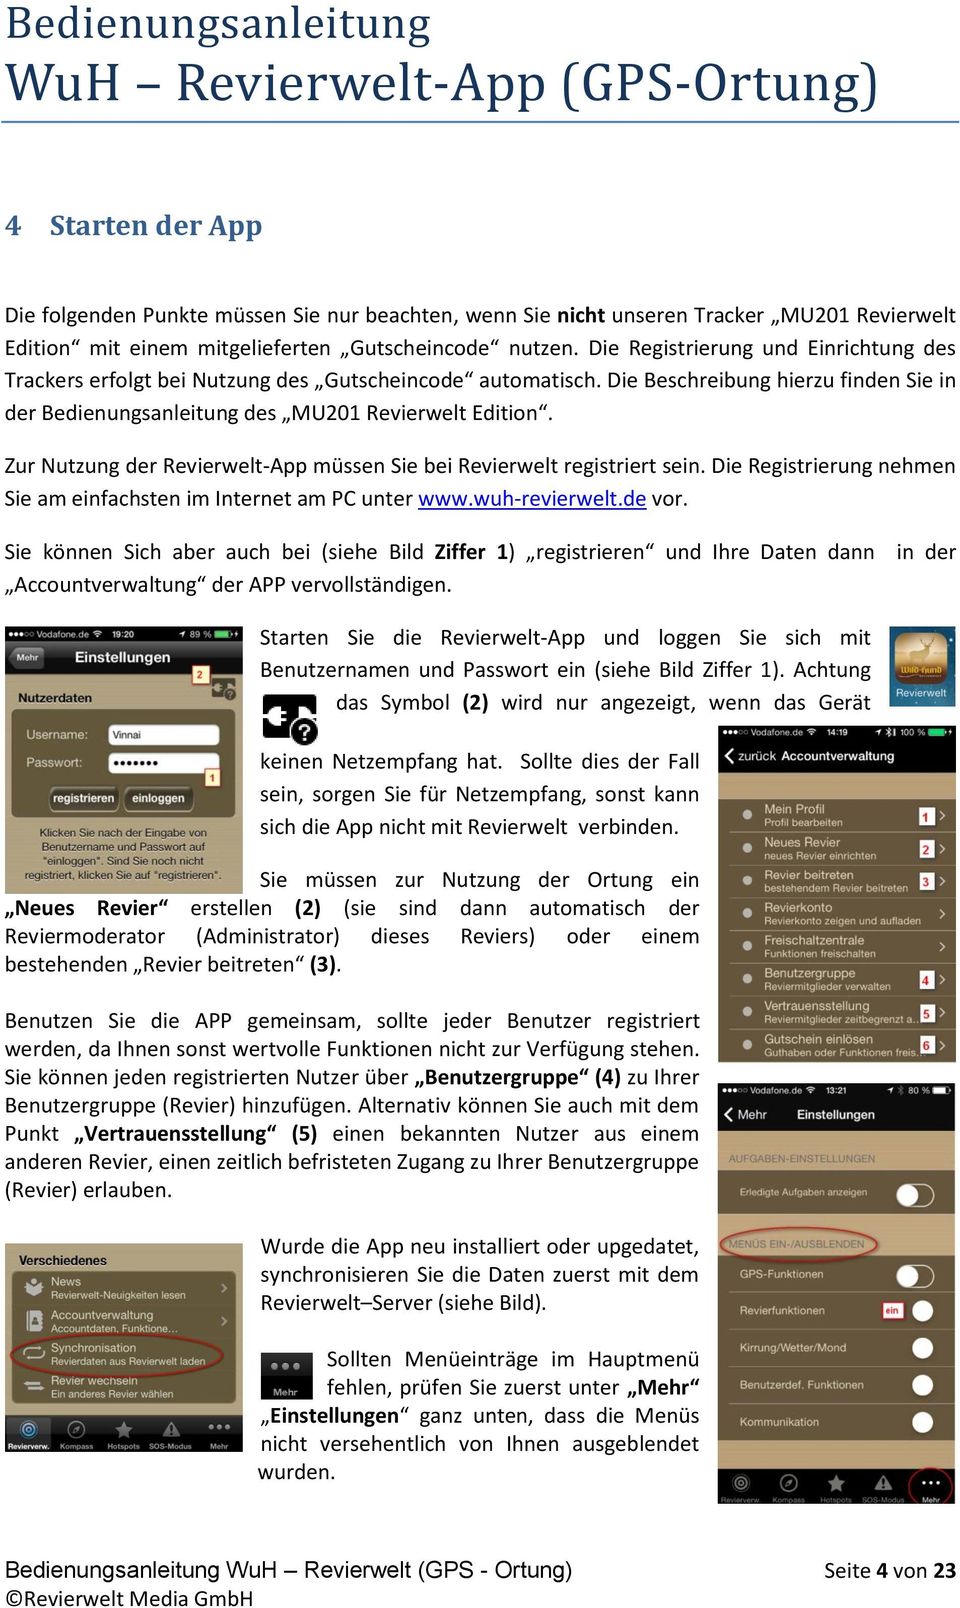 Zur Nutzung der Revierwelt-App müssen Sie bei Revierwelt registriert sein. Die Registrierung nehmen Sie am einfachsten im Internet am PC unter www.wuh-revierwelt.de vor.